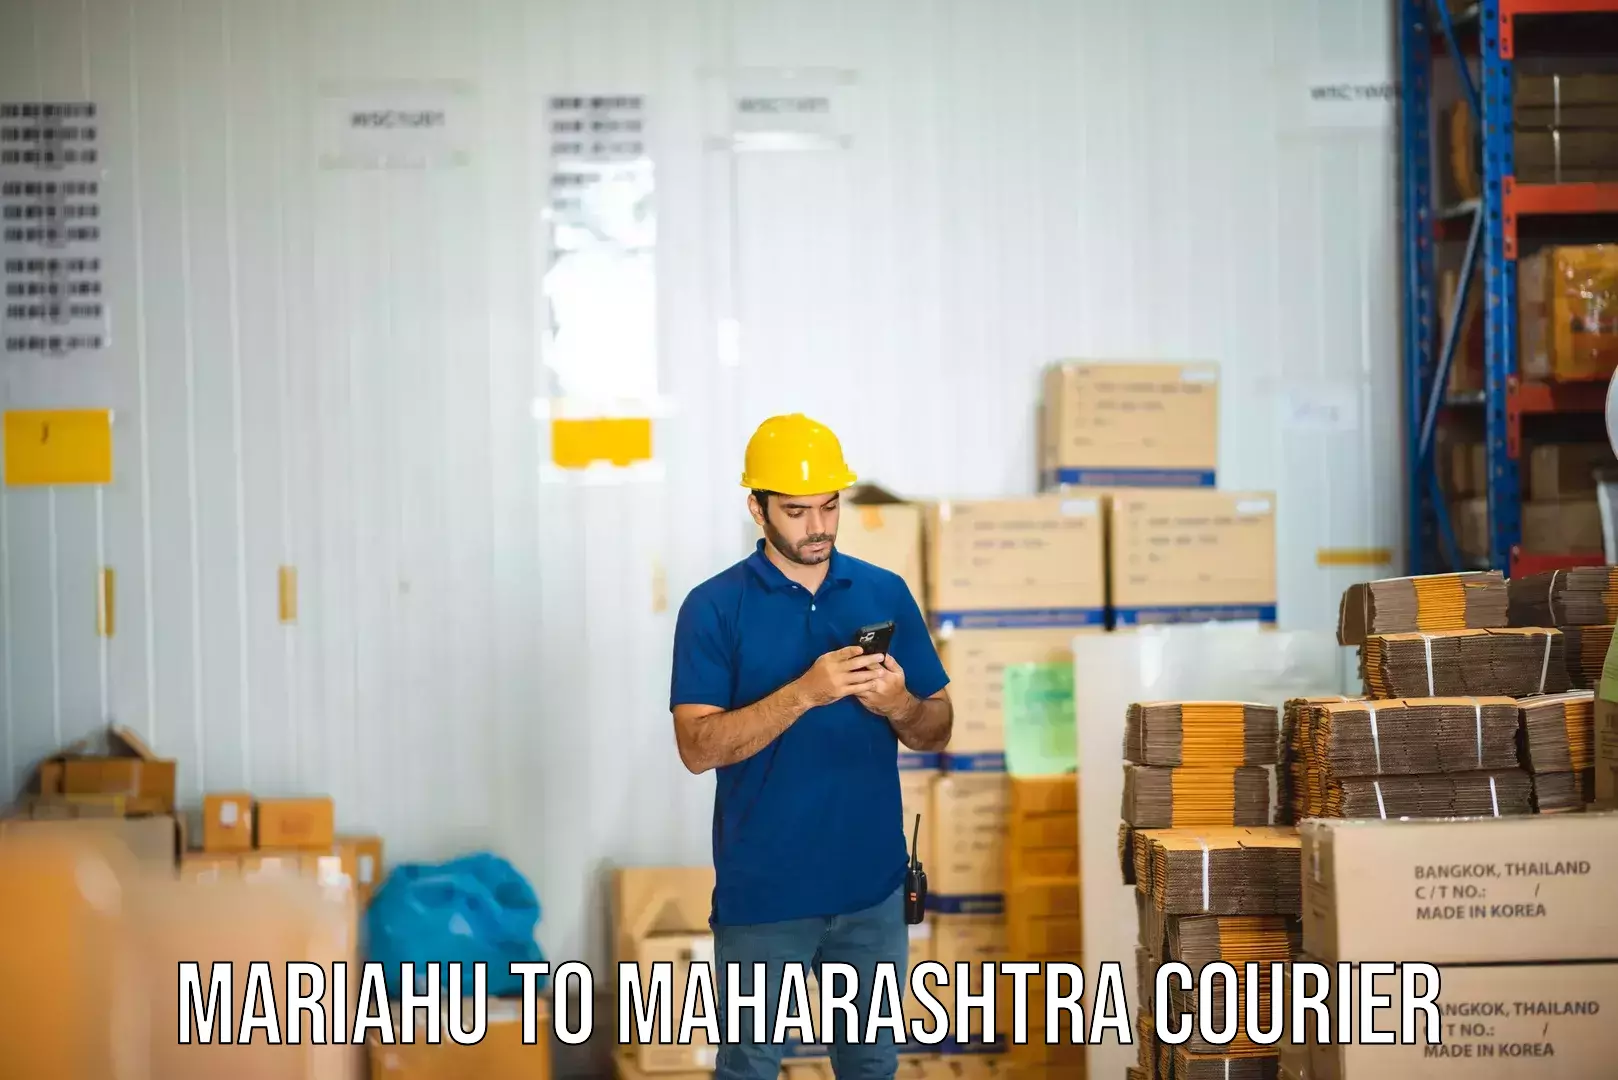 Dynamic courier operations Mariahu to Maharashtra